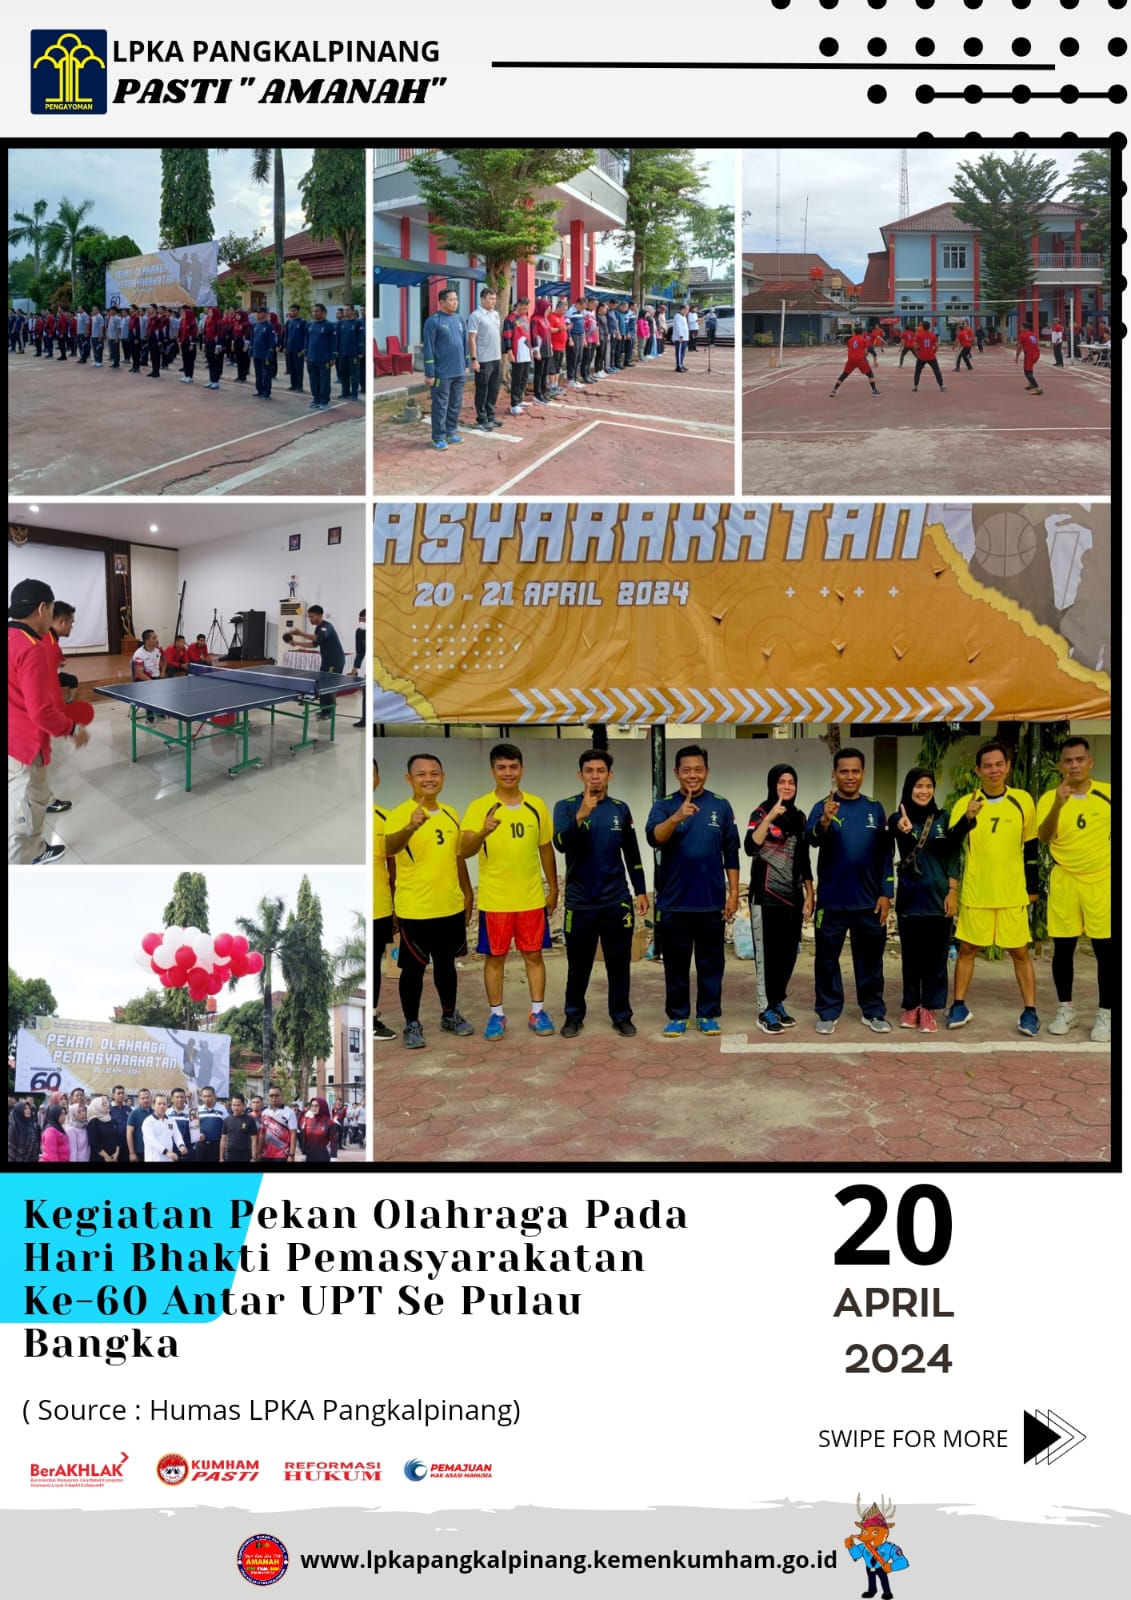 Kegiatan Pekan Olahraga Pada hari Bhakti Pemasyarakatan ke-60 Antar UPT Se Pulau Bangka